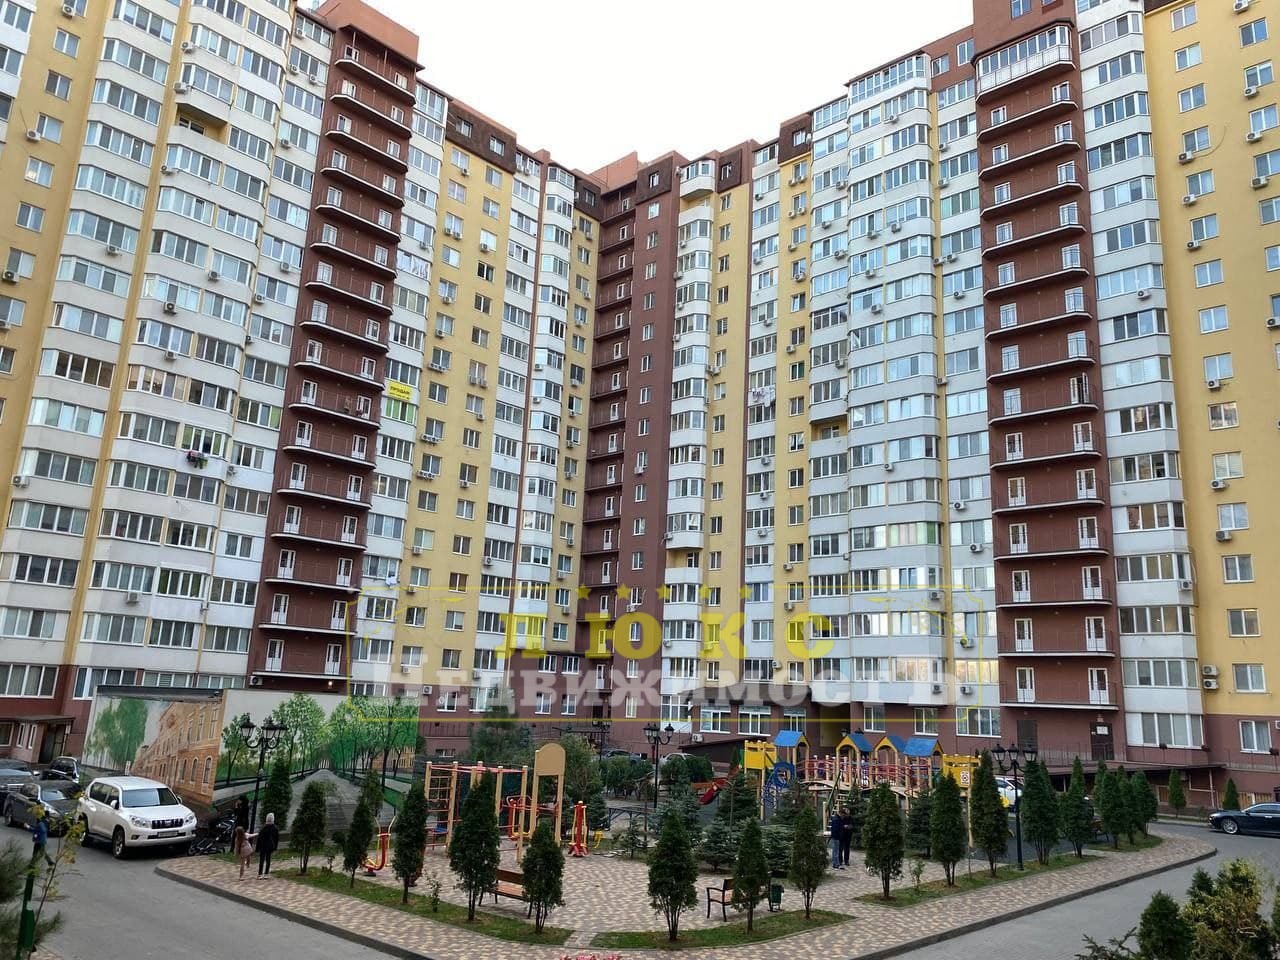 Продам дворівневу квартиру на Таїрова. Пентхаус у ЖК "Левітана" ID 51456 (Фото 2)